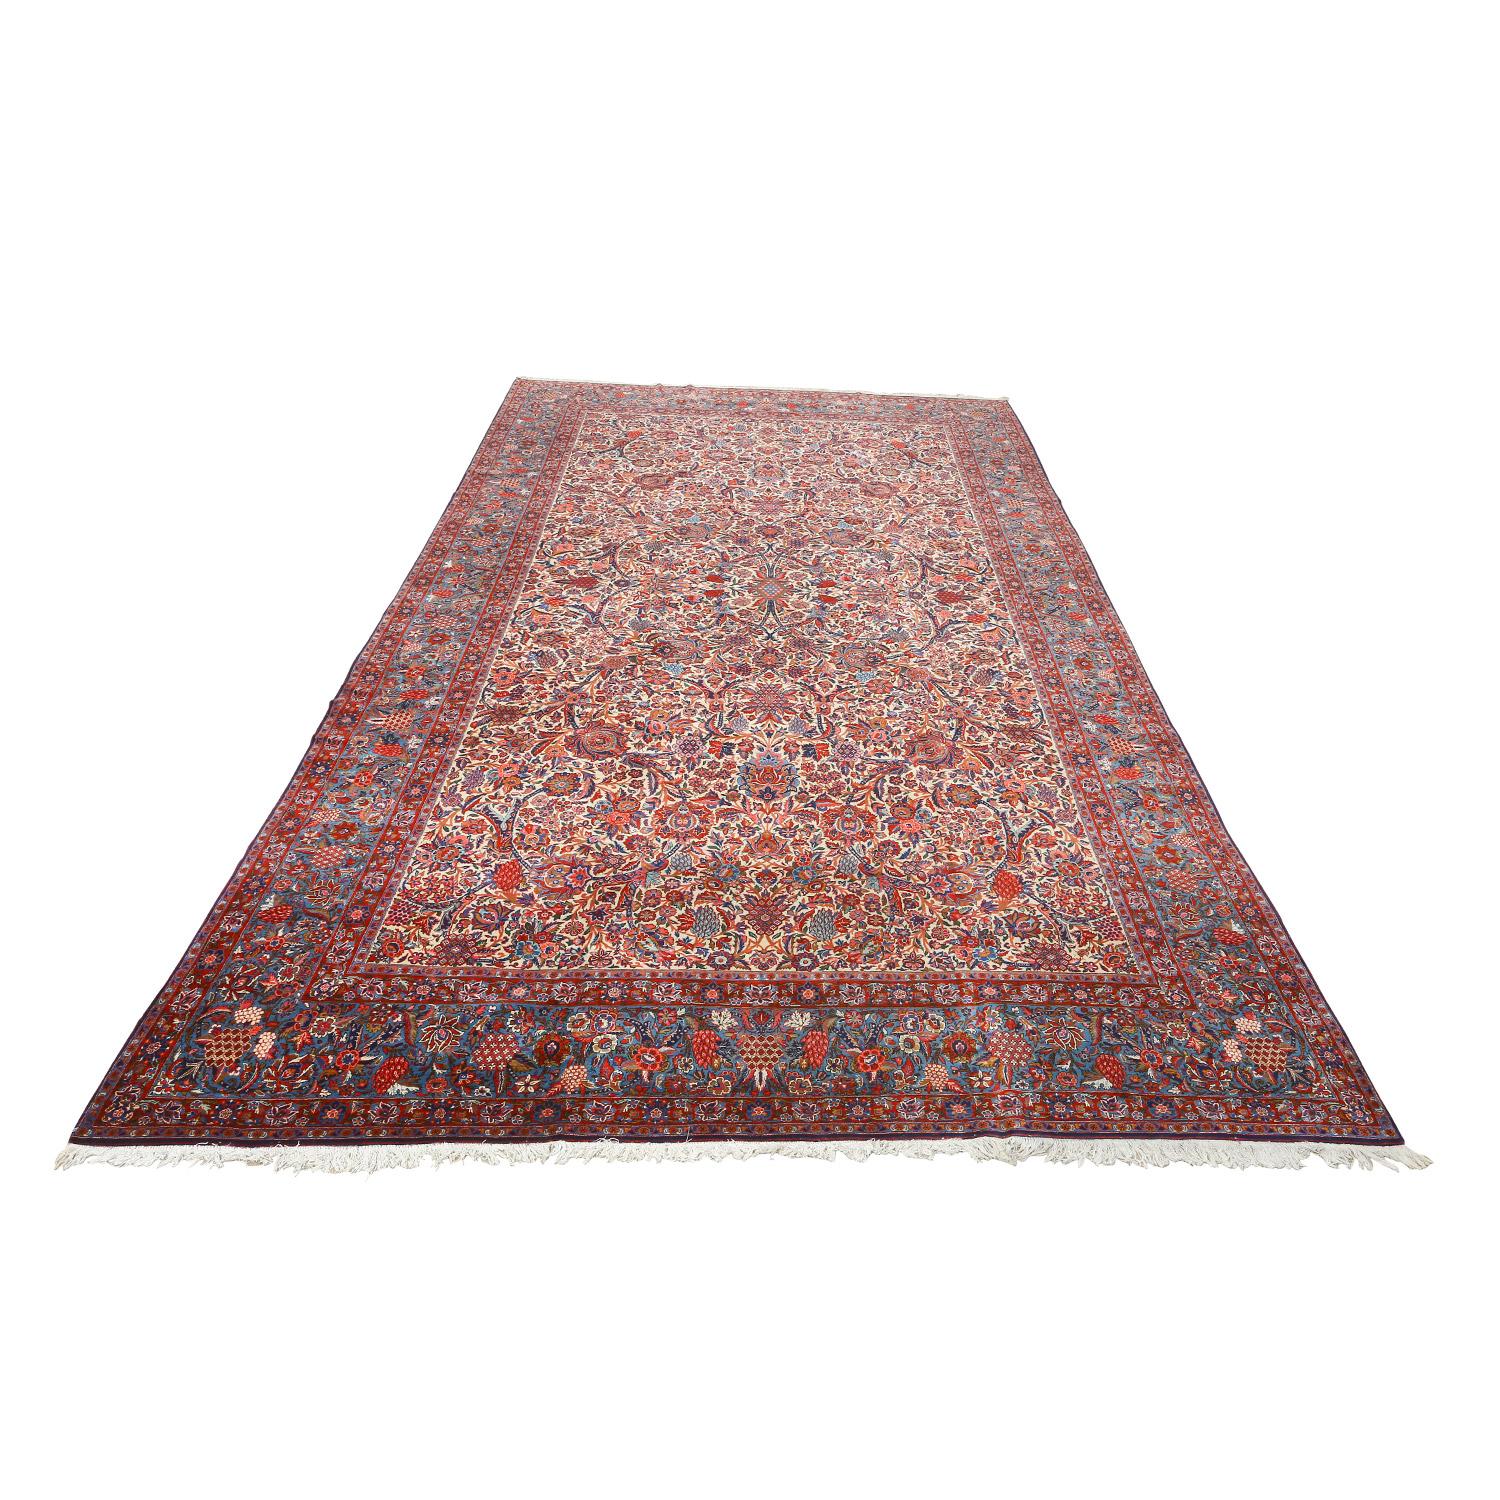 Ce tapis Ghazvin ancien, tissé de main de maître par les mains habiles d'Etemad, est une pièce extraordinaire de l'artisanat persan. Avec ses dimensions imposantes de 18 pieds sur 10 pieds, il attire l'attention et suscite l'admiration, ce qui en